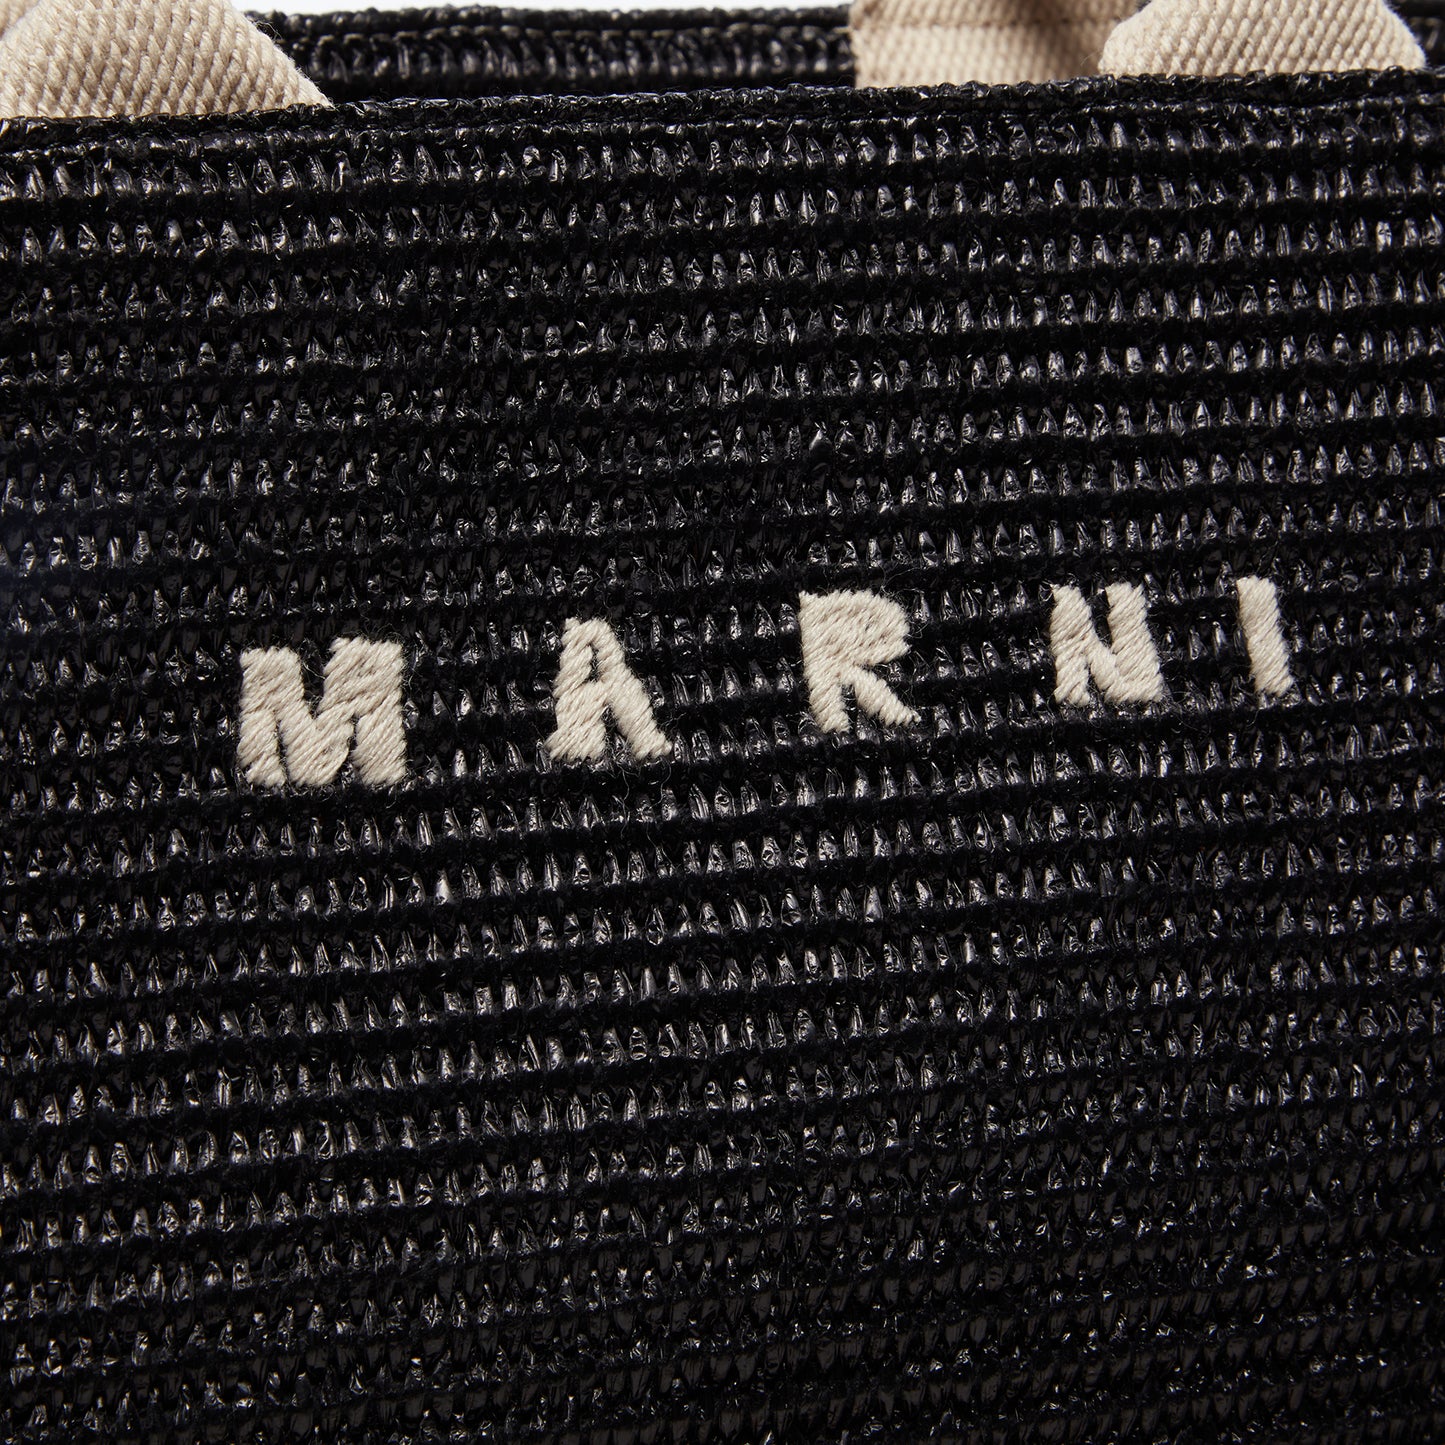 MARNI Shopping Bag (Black/Natural)